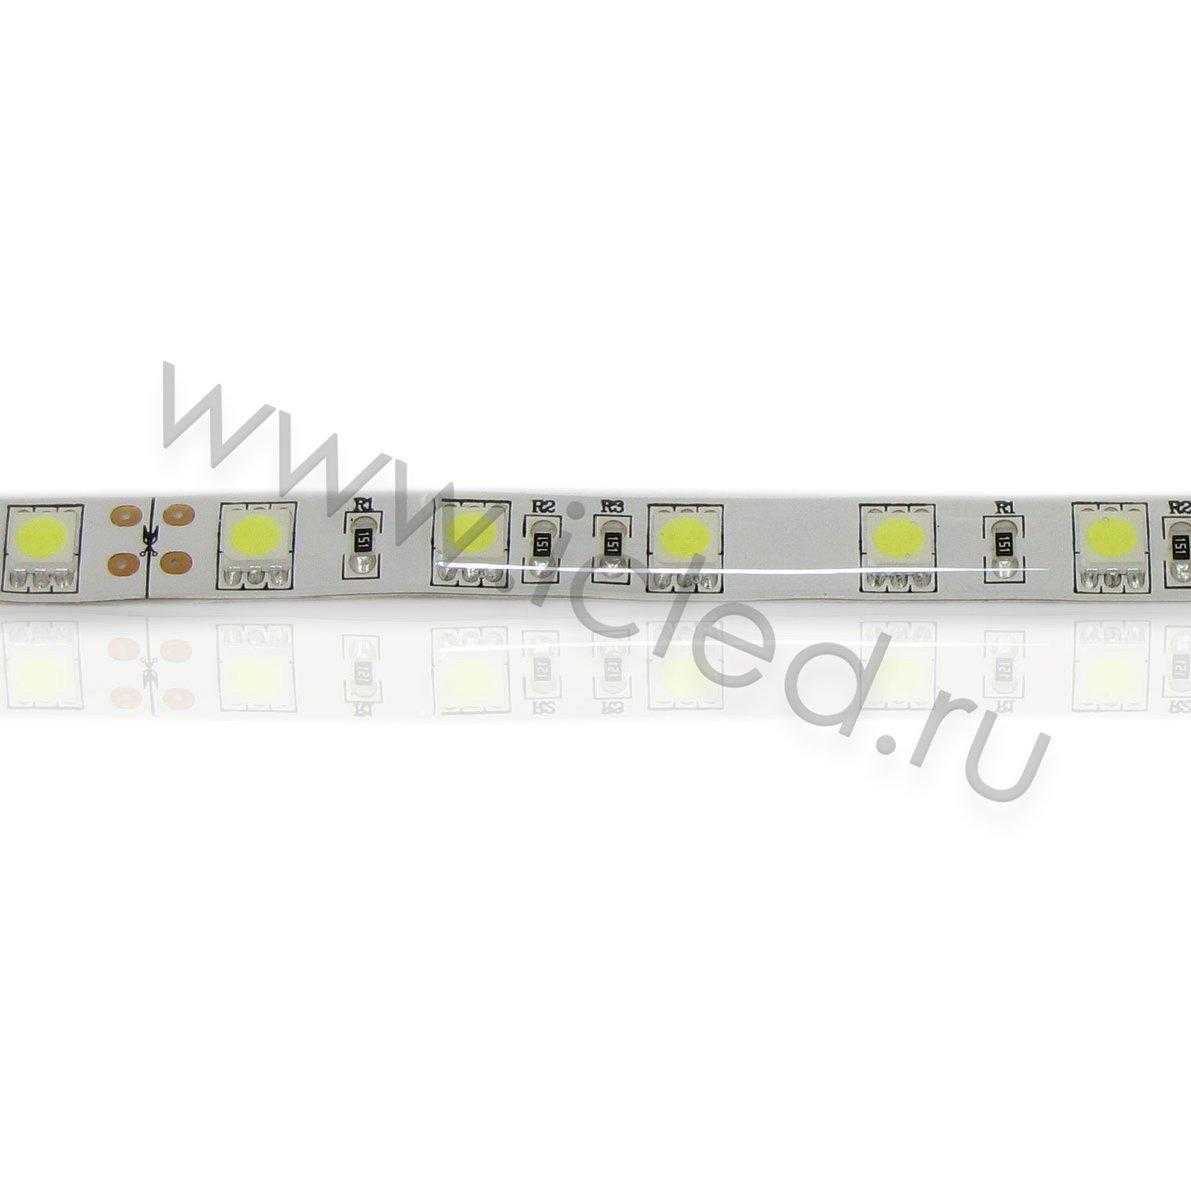 Влагозащищенные светодиодные ленты Светодиодная лента Standart PRO class, 5050, 60led/m, White, 24V, IP65 Icled